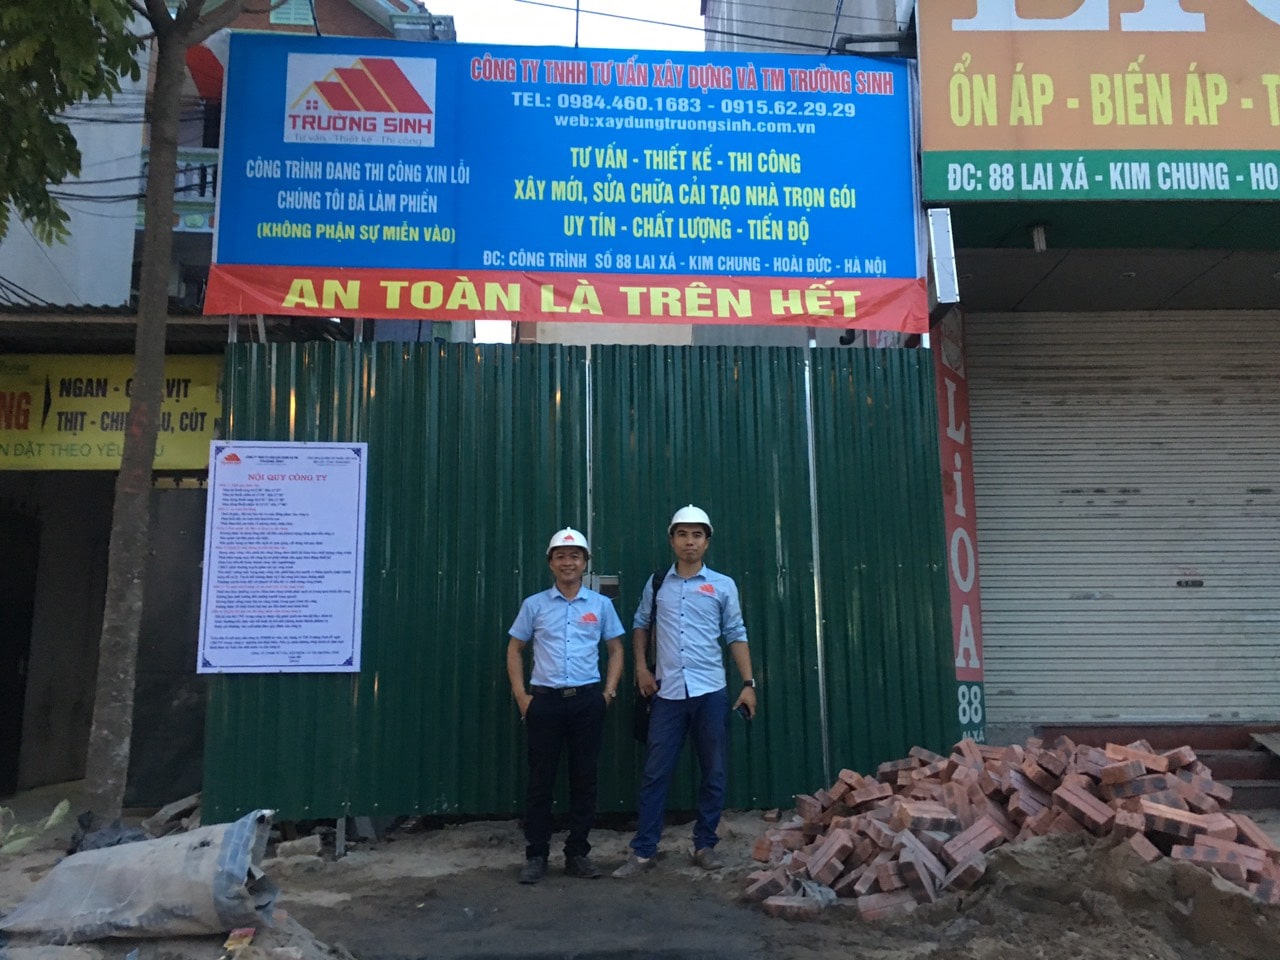 Tuyển kỹ sư xây dựng và công nhân xây dựng làm việc tại Hà Nội